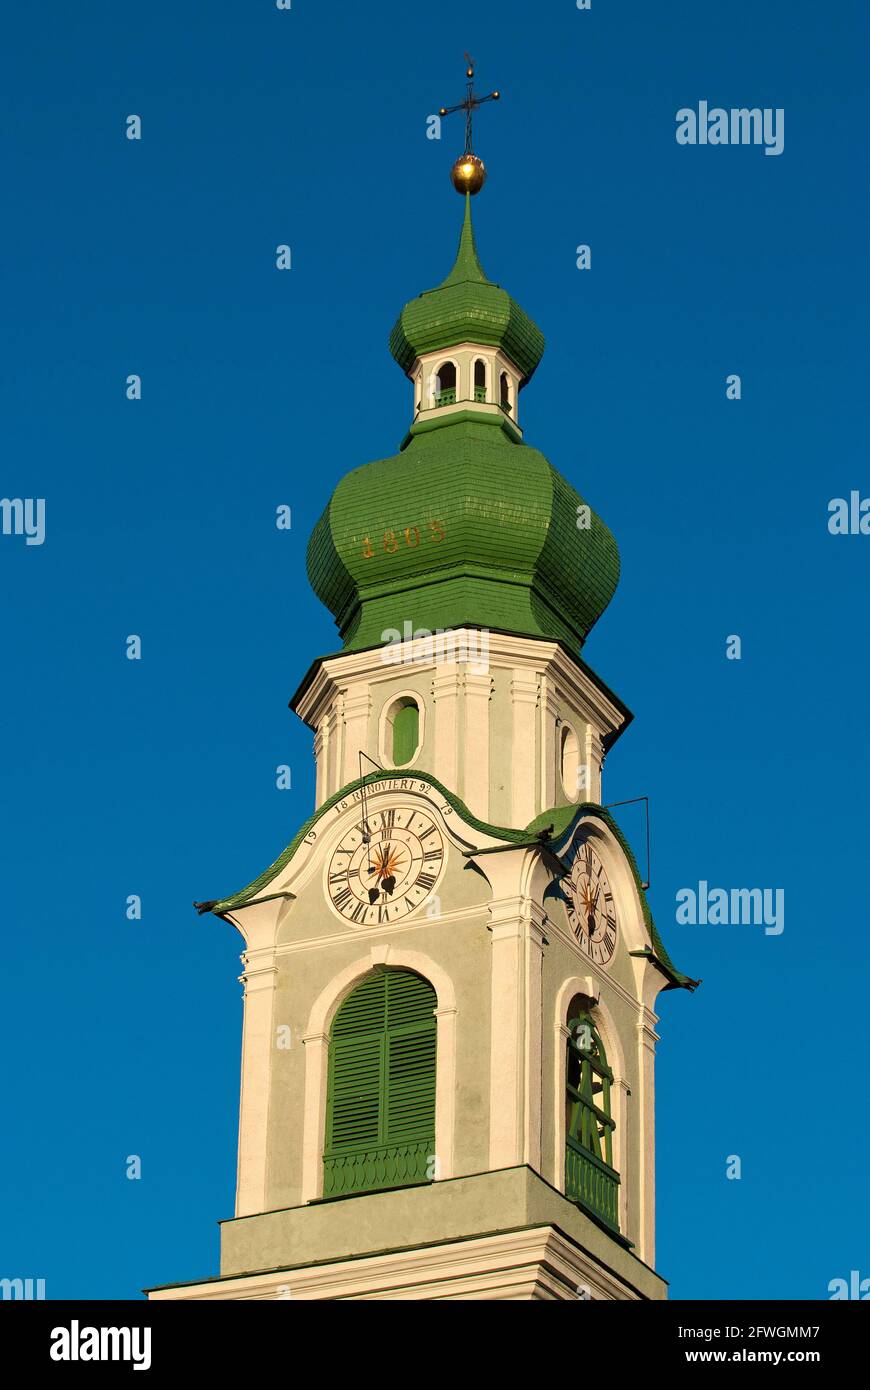 Haut du clocher de l'église paroissiale de San Giovanni Battista à Dobbiaco (Toblach), vallée de la Pusteria, Trentin-Haut-Adige, Italie Banque D'Images